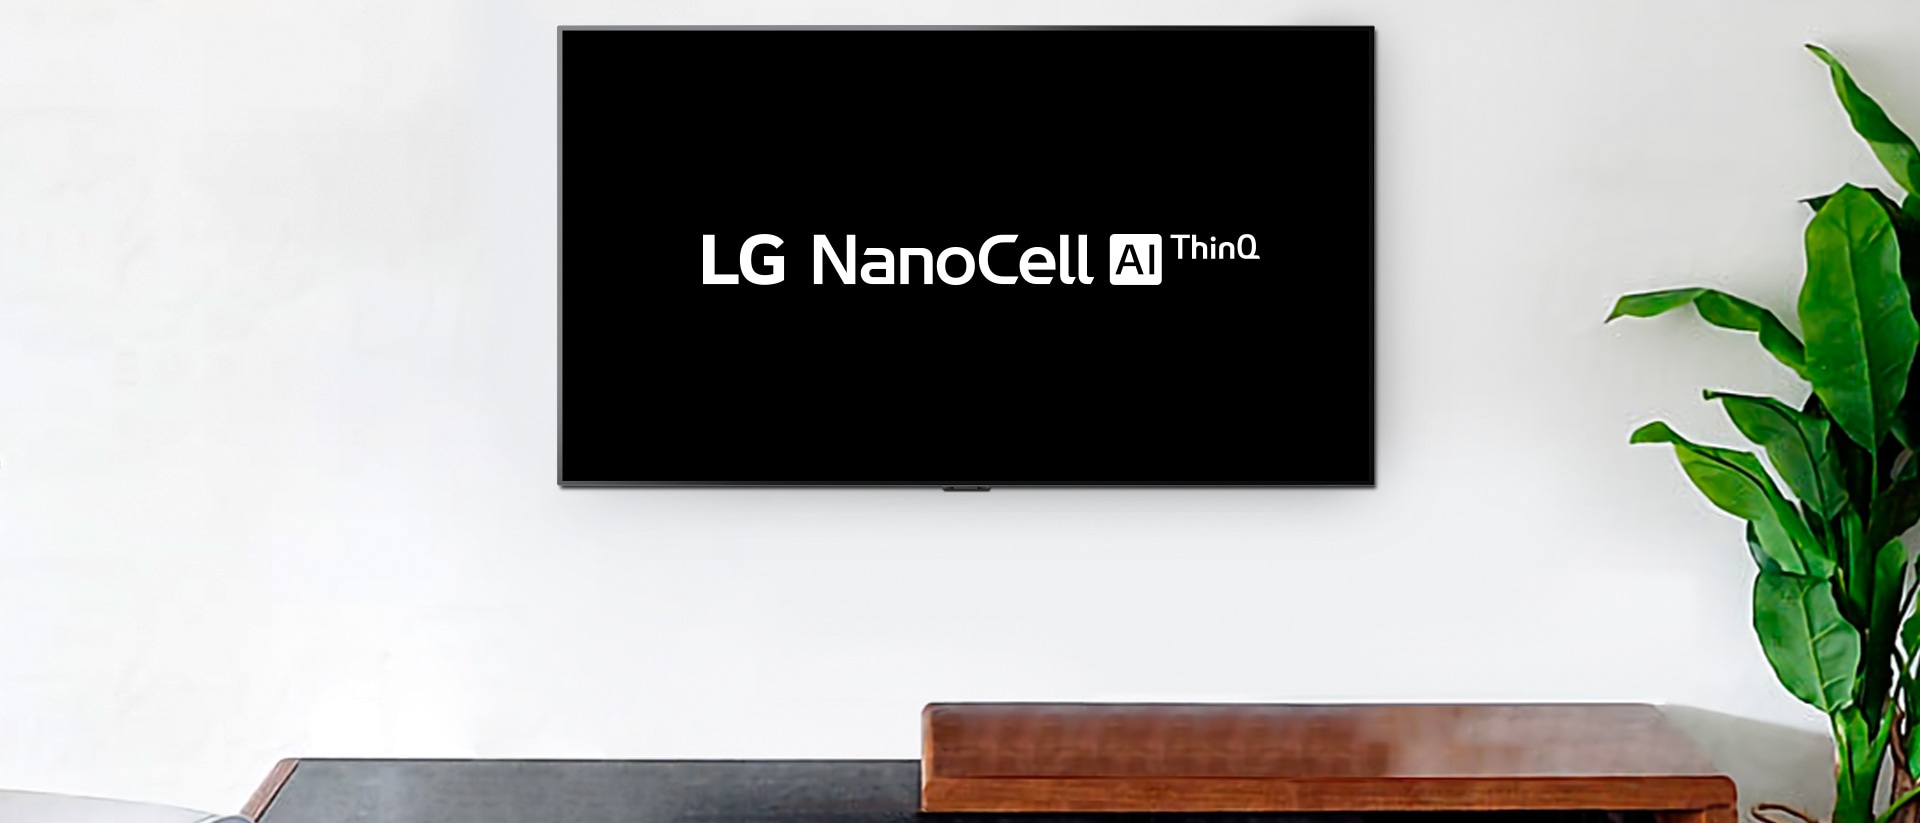 Televizor montiran na zid na kom se prikazuje logotip LG OLED AI ThinQ na crnoj pozadini